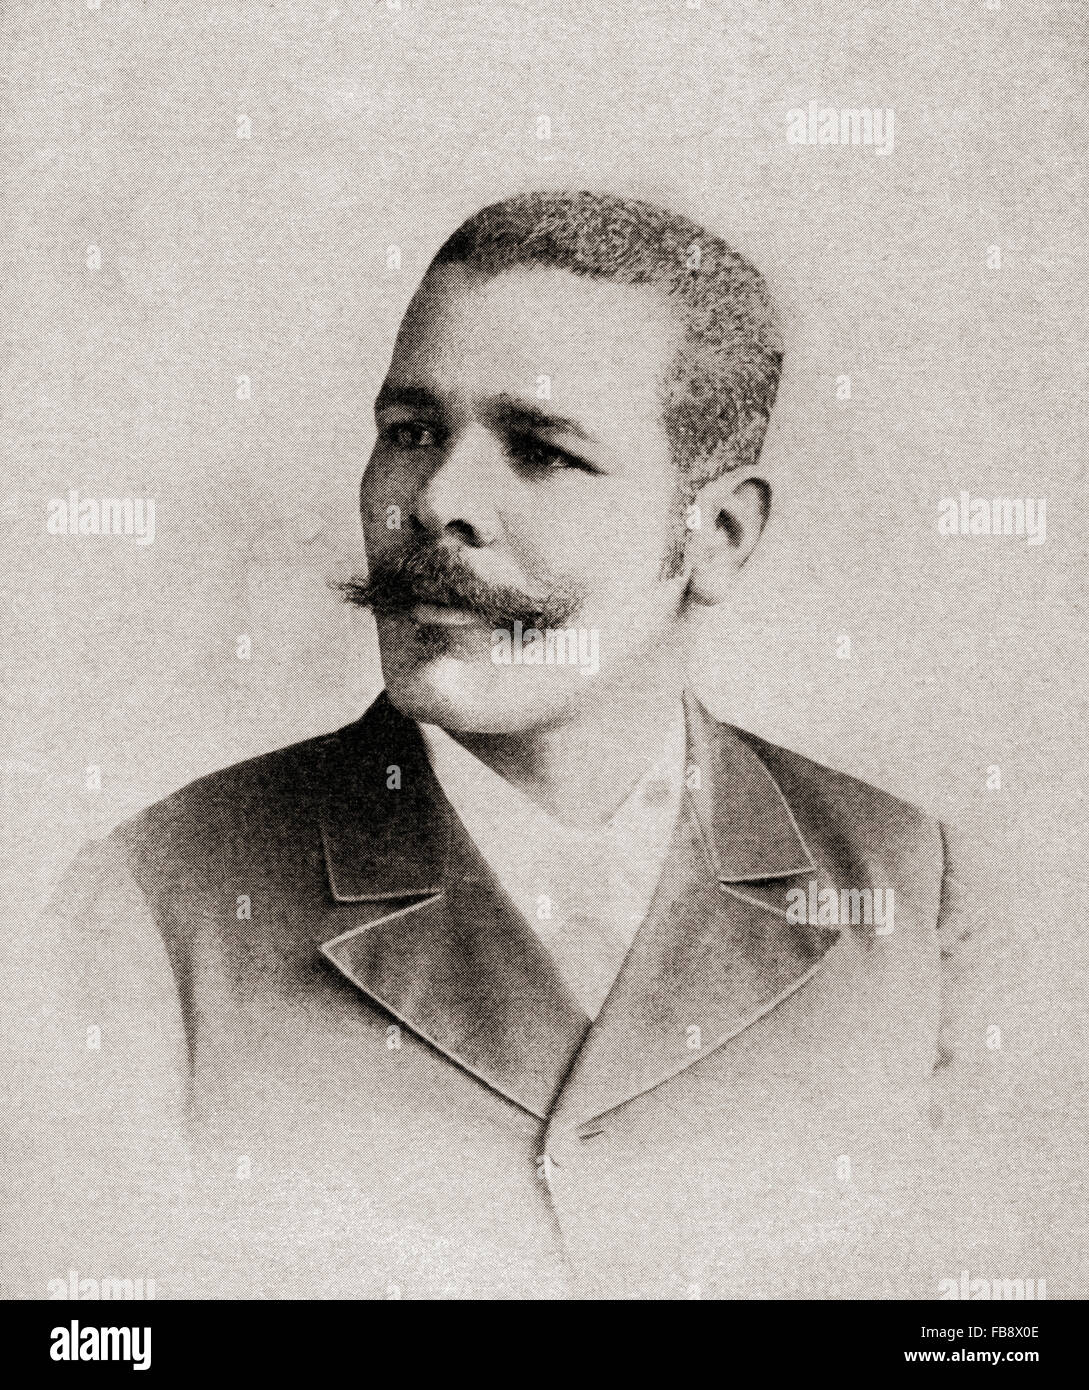 Lt. Generale José Antonio de la Caridad Maceo y Grajales, 1845 - 1896. Seconda-in-il comando dell'esercito Cubano di indipendenza, 1895-1898. Foto Stock